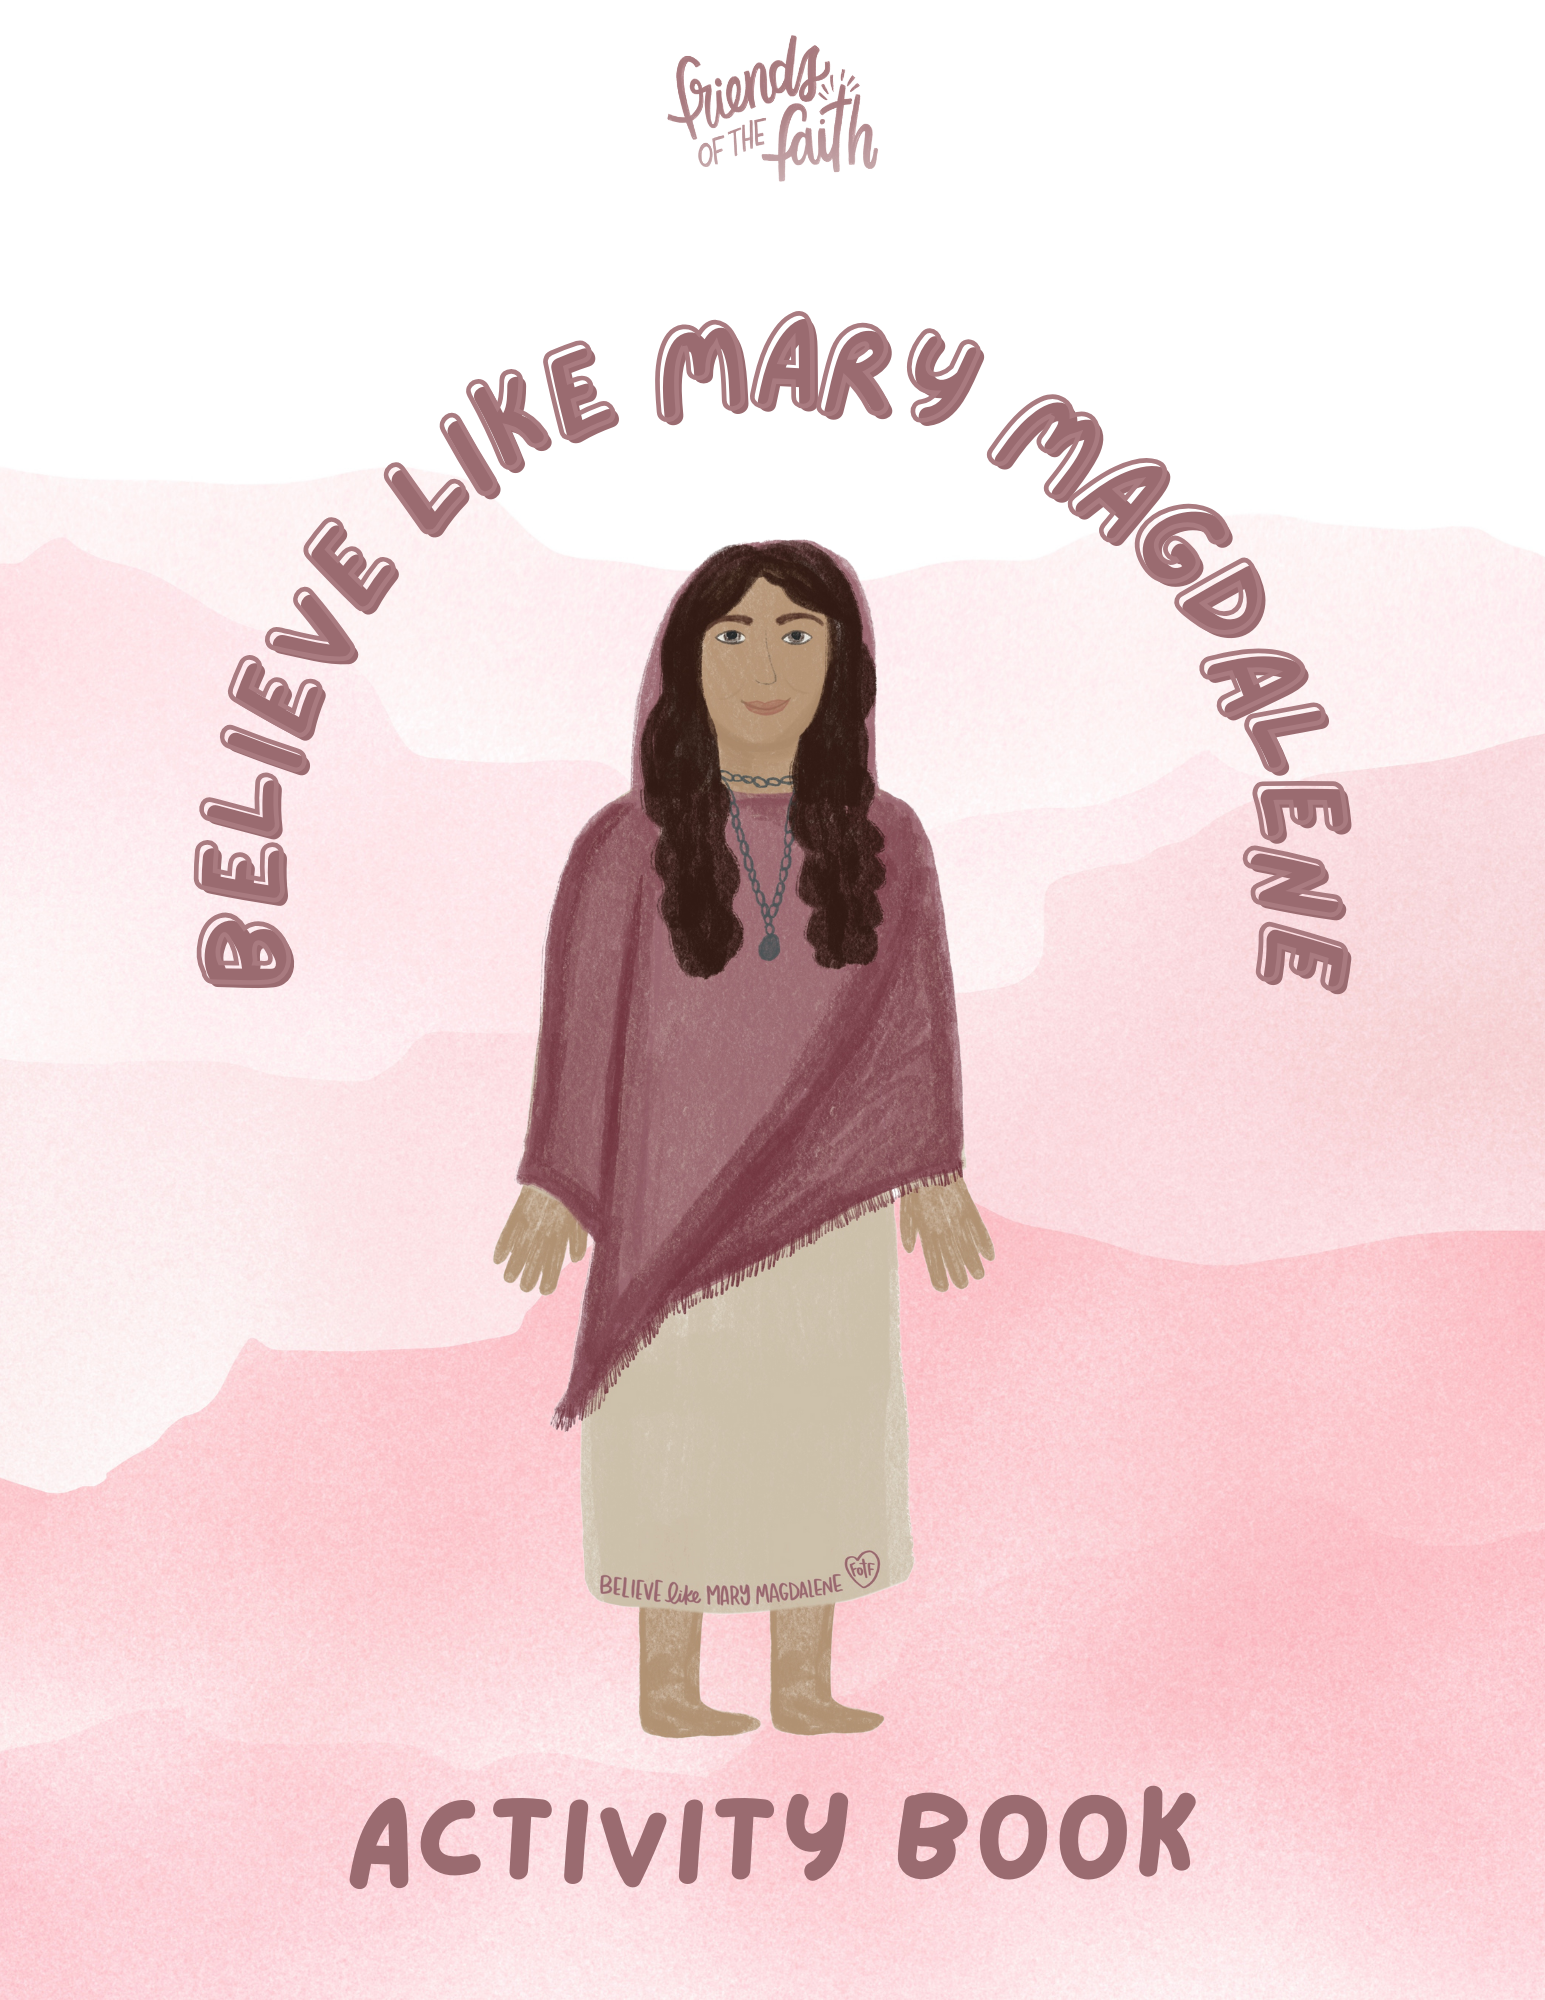 Believe Like Mary Magdalene Activity Book - Friends of the Faith